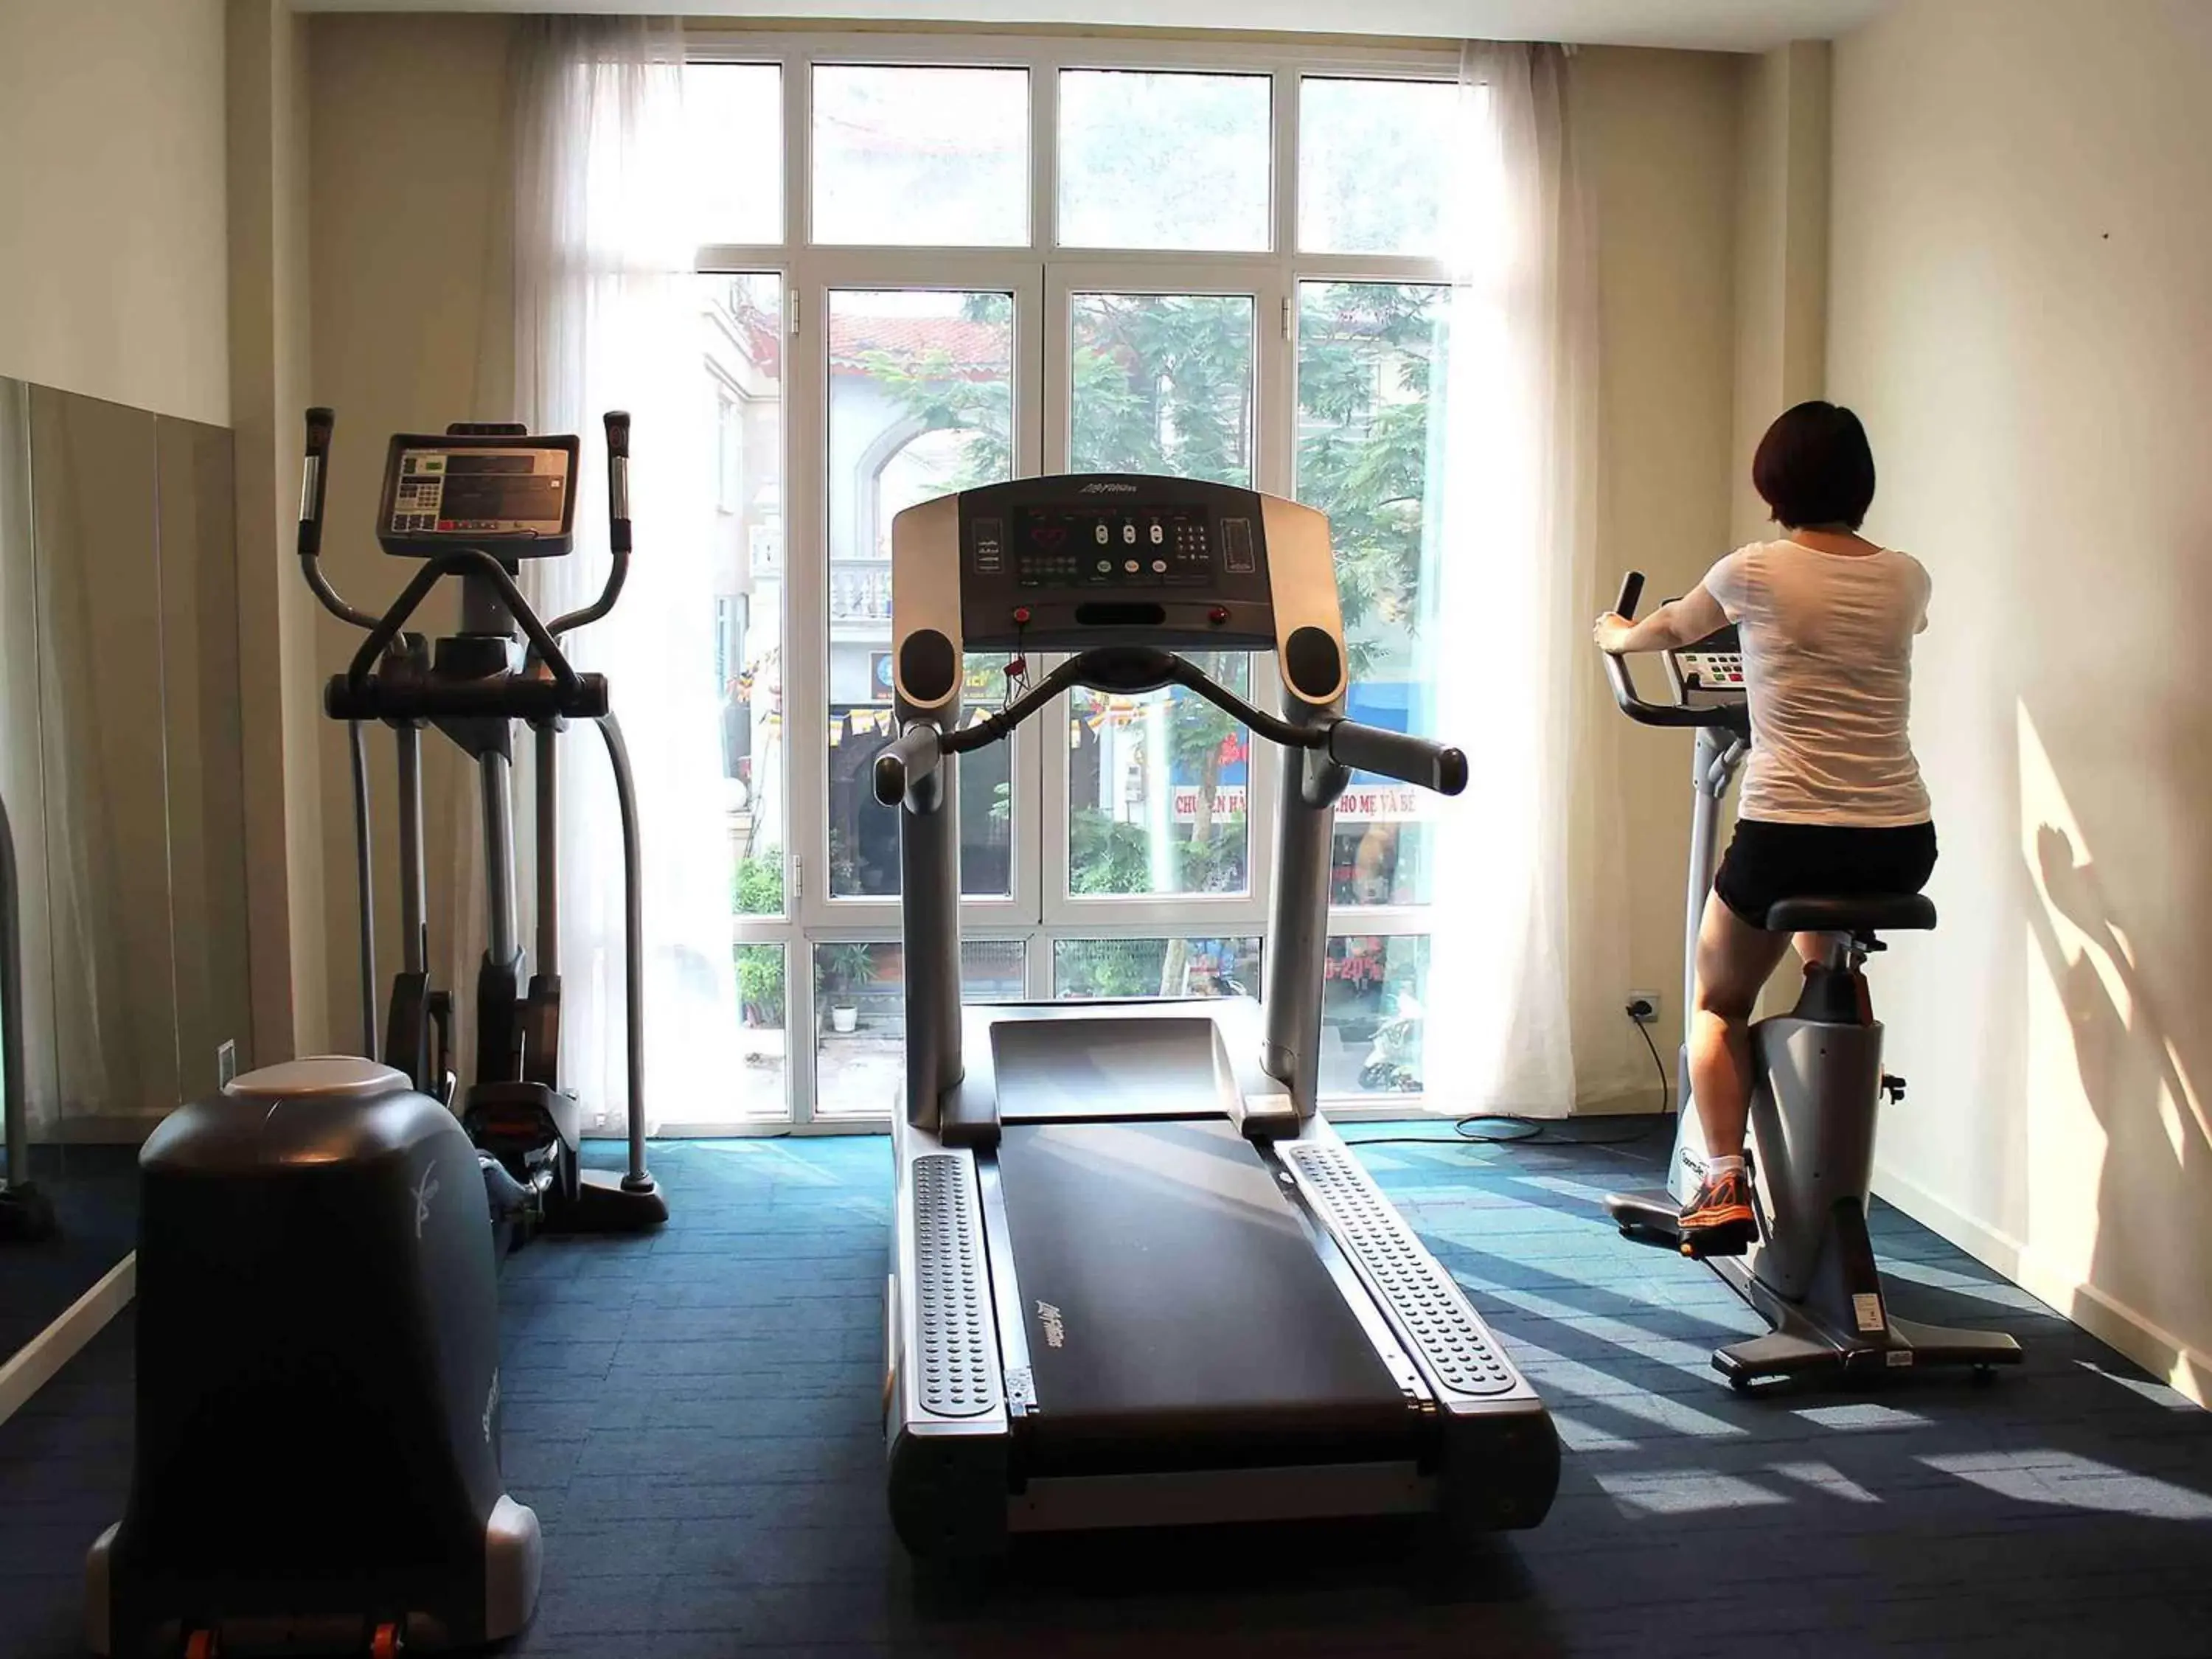 Fitness centre/facilities, Fitness Center/Facilities in Mercure Hanoi La Gare Hotel